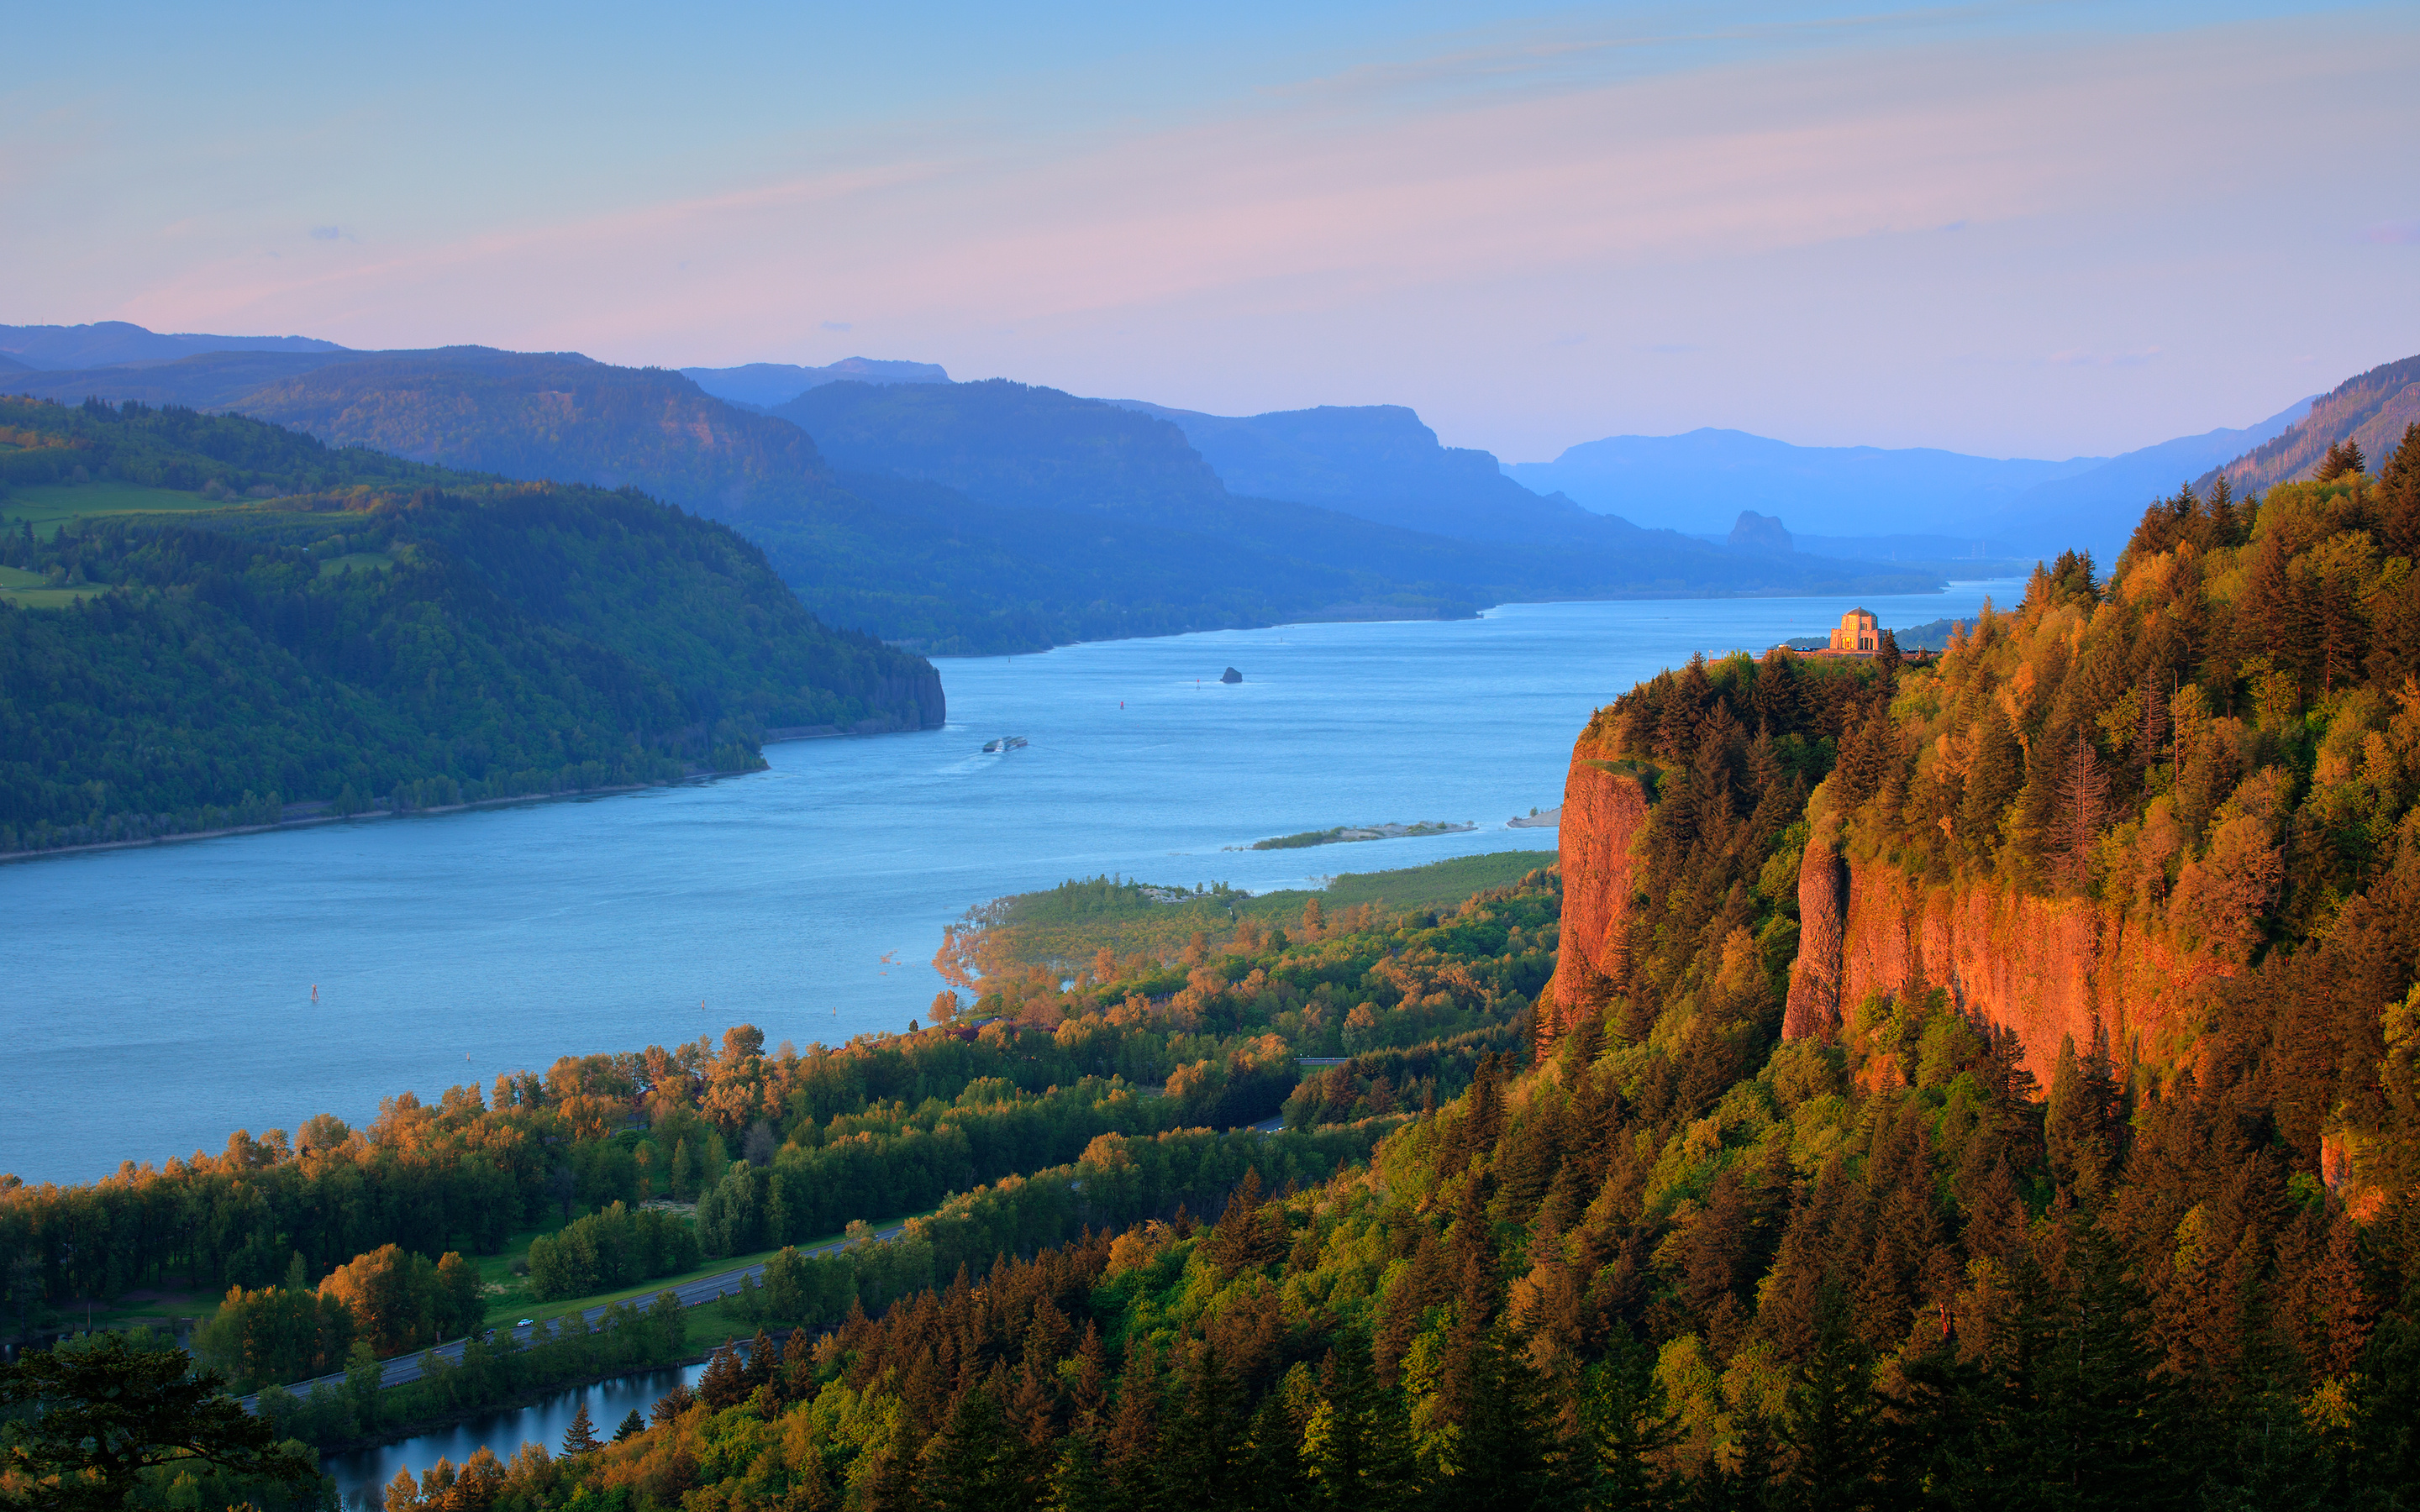 Местоположение и природа. Река Колумбия Орегон. Река Колумбия в Северной Америке. Река Енисей. Река Колумбия Канада.